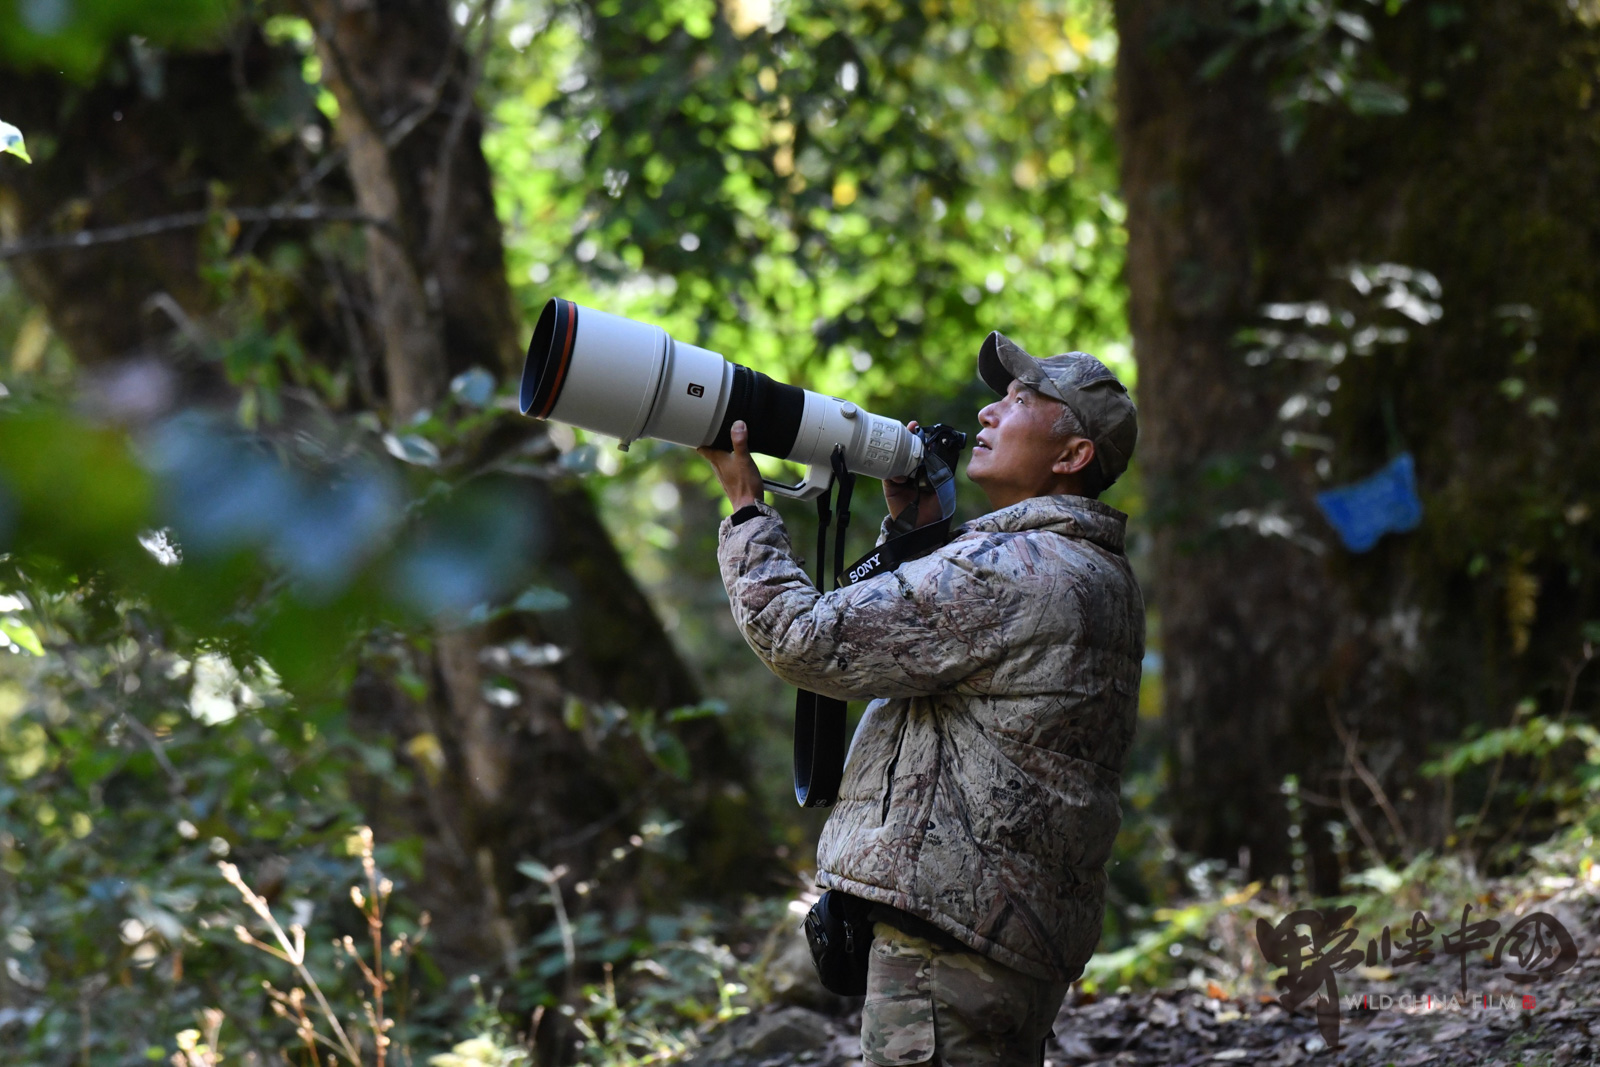 一位野生动物摄影师的38年:在云南,不止大象"离家出走